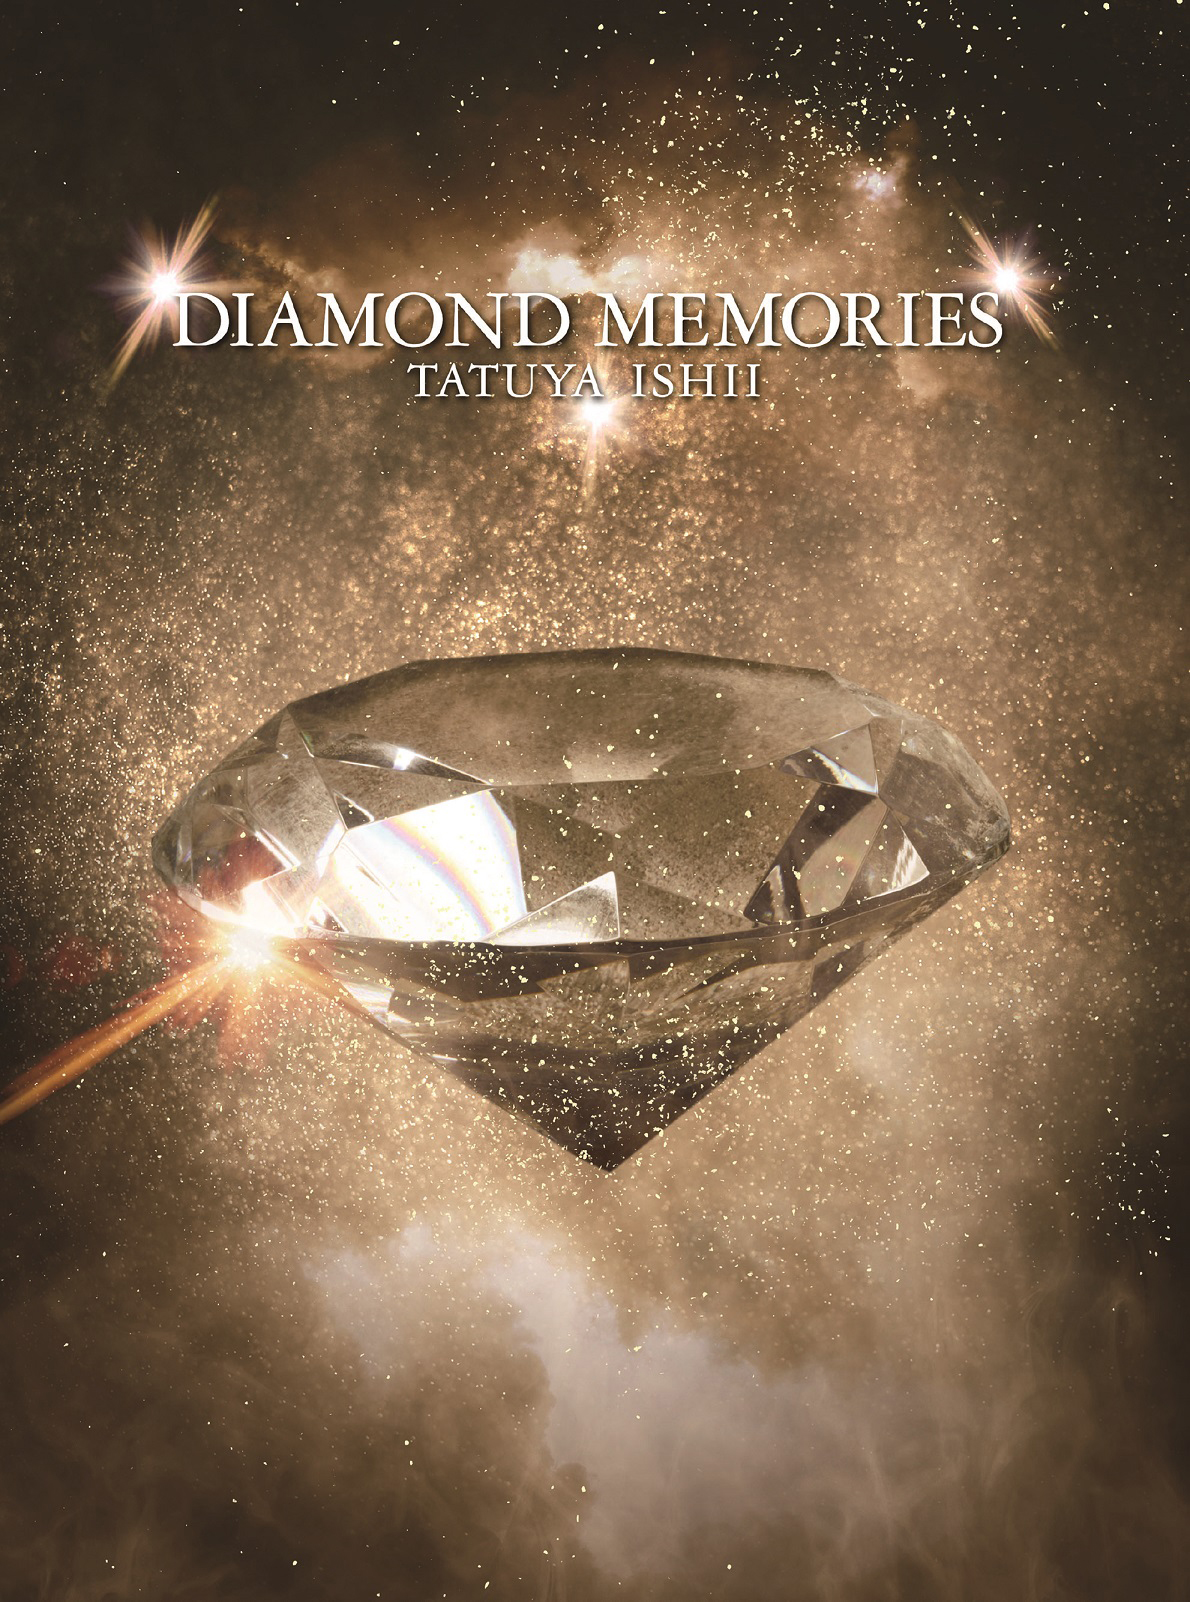 石井竜也、アルバム「DIAMOND MEMORIES」は昭和の名曲のカバーを多数収録 収録曲数増加の為アルバム発売日変更 | Musicman